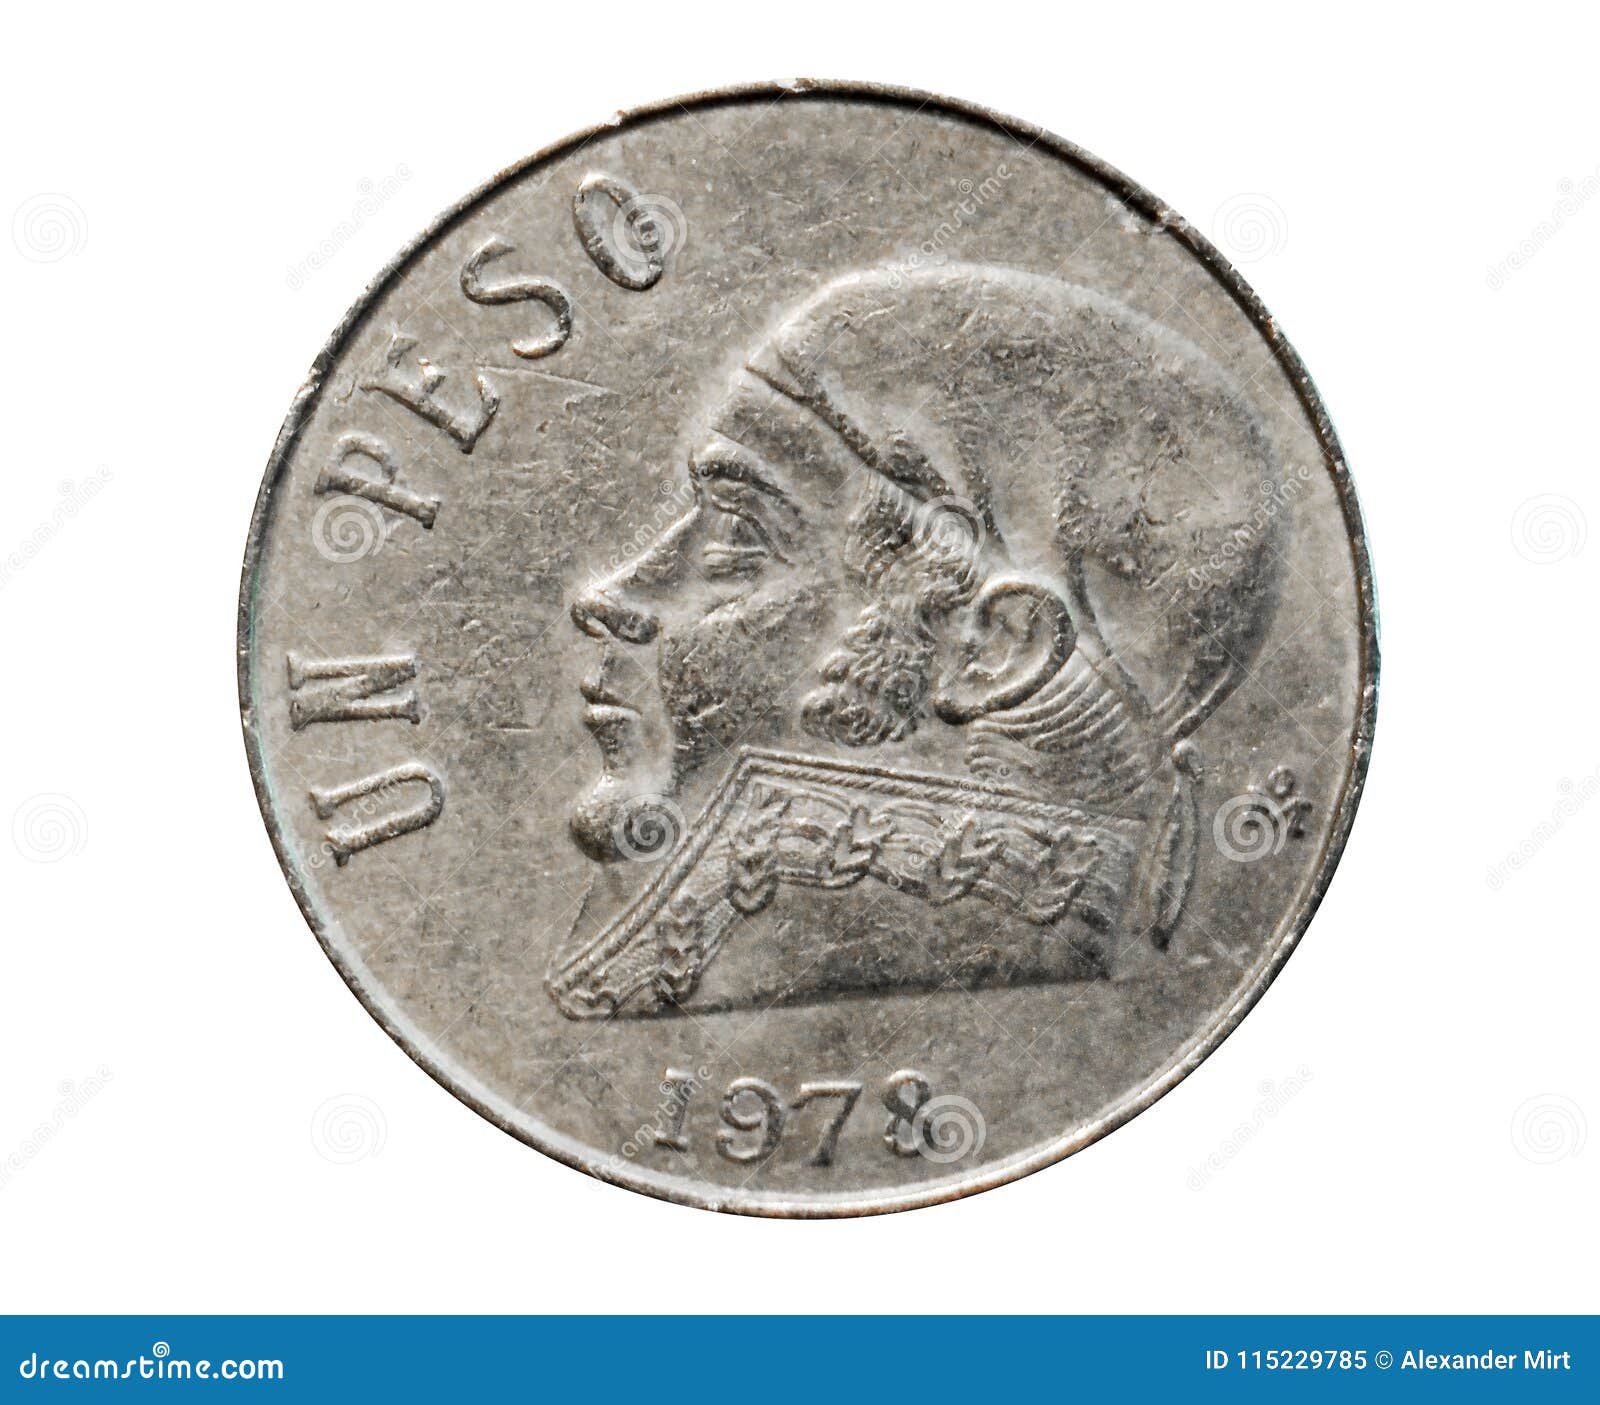 1 peso coin (estados unidos mexicanos circulation). bank of mexico. obverse, 1978